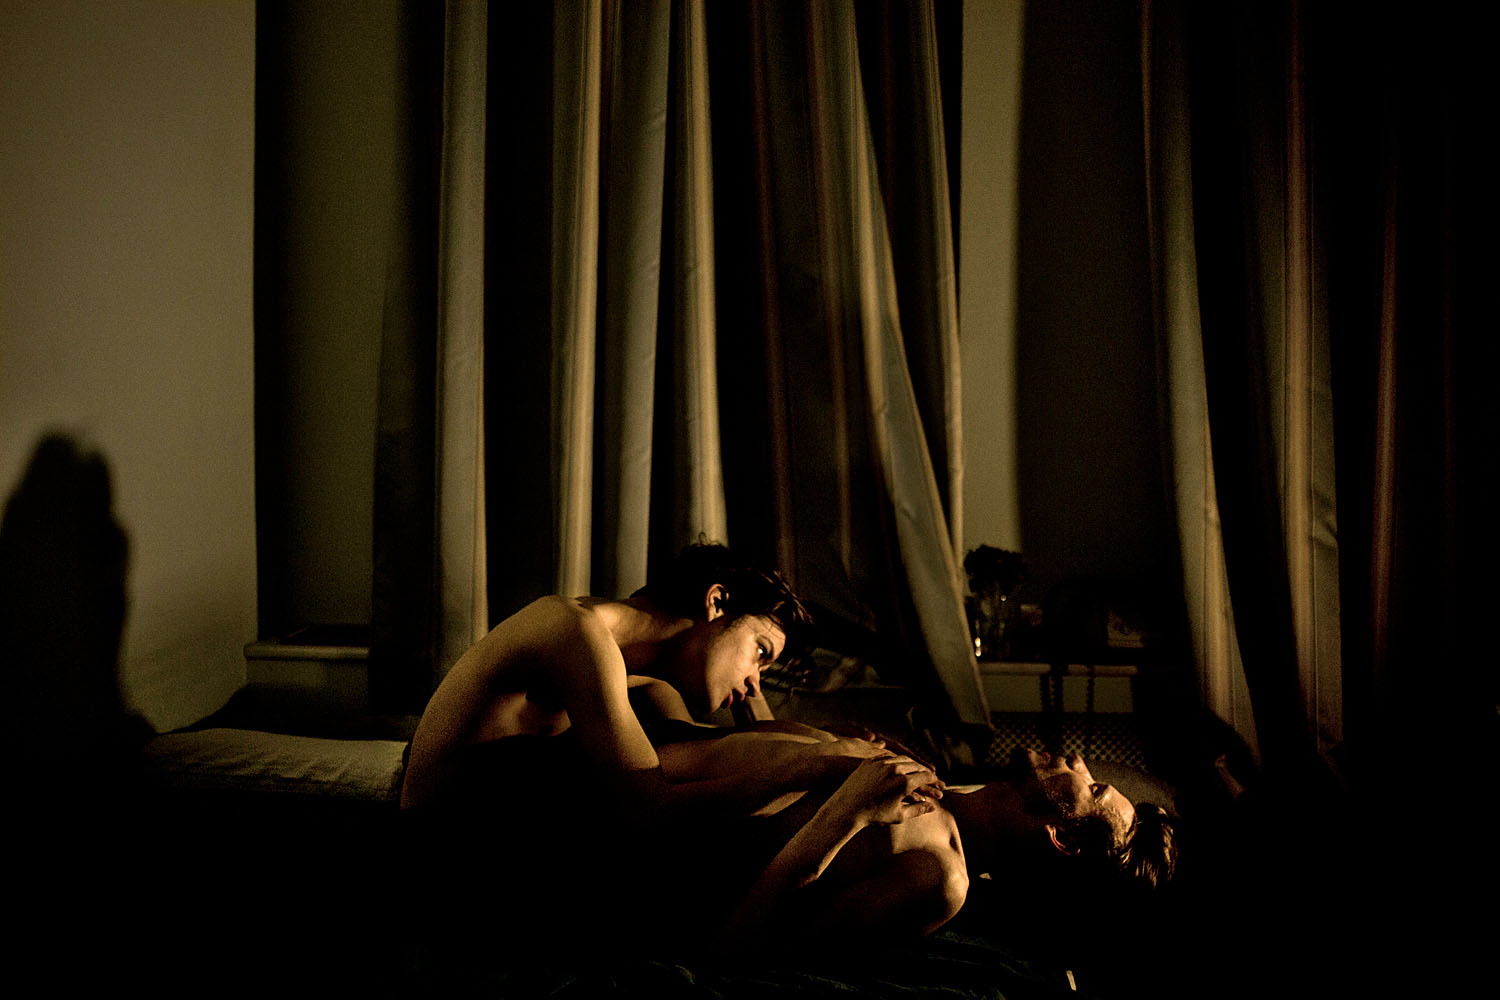 Meleg szerelmespár intim jelenete egy kis szentpétervári lakásban